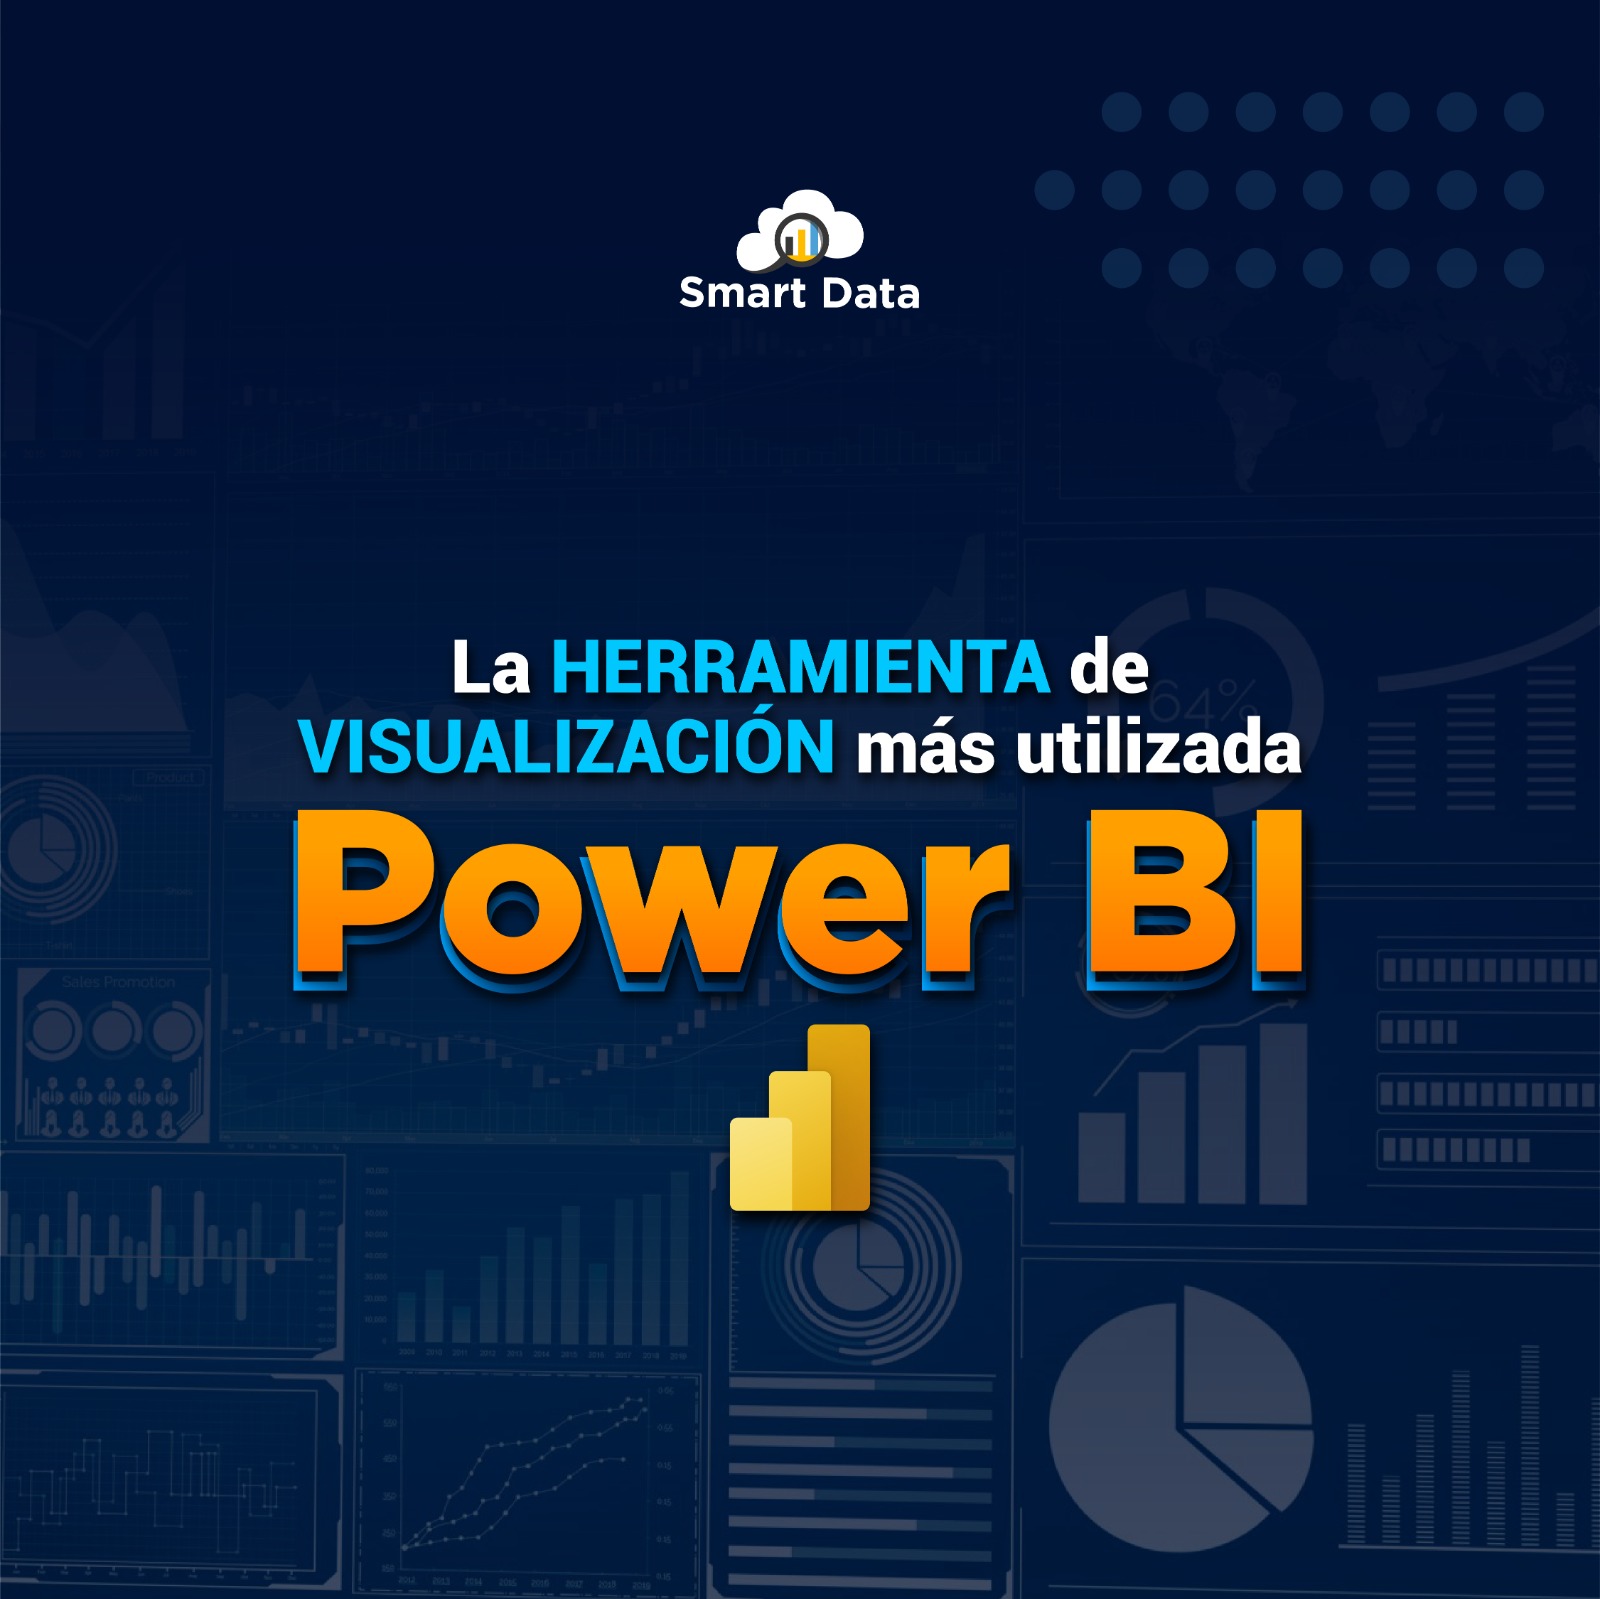 Power BI es la herramienta más poderosa para dominar tus datos